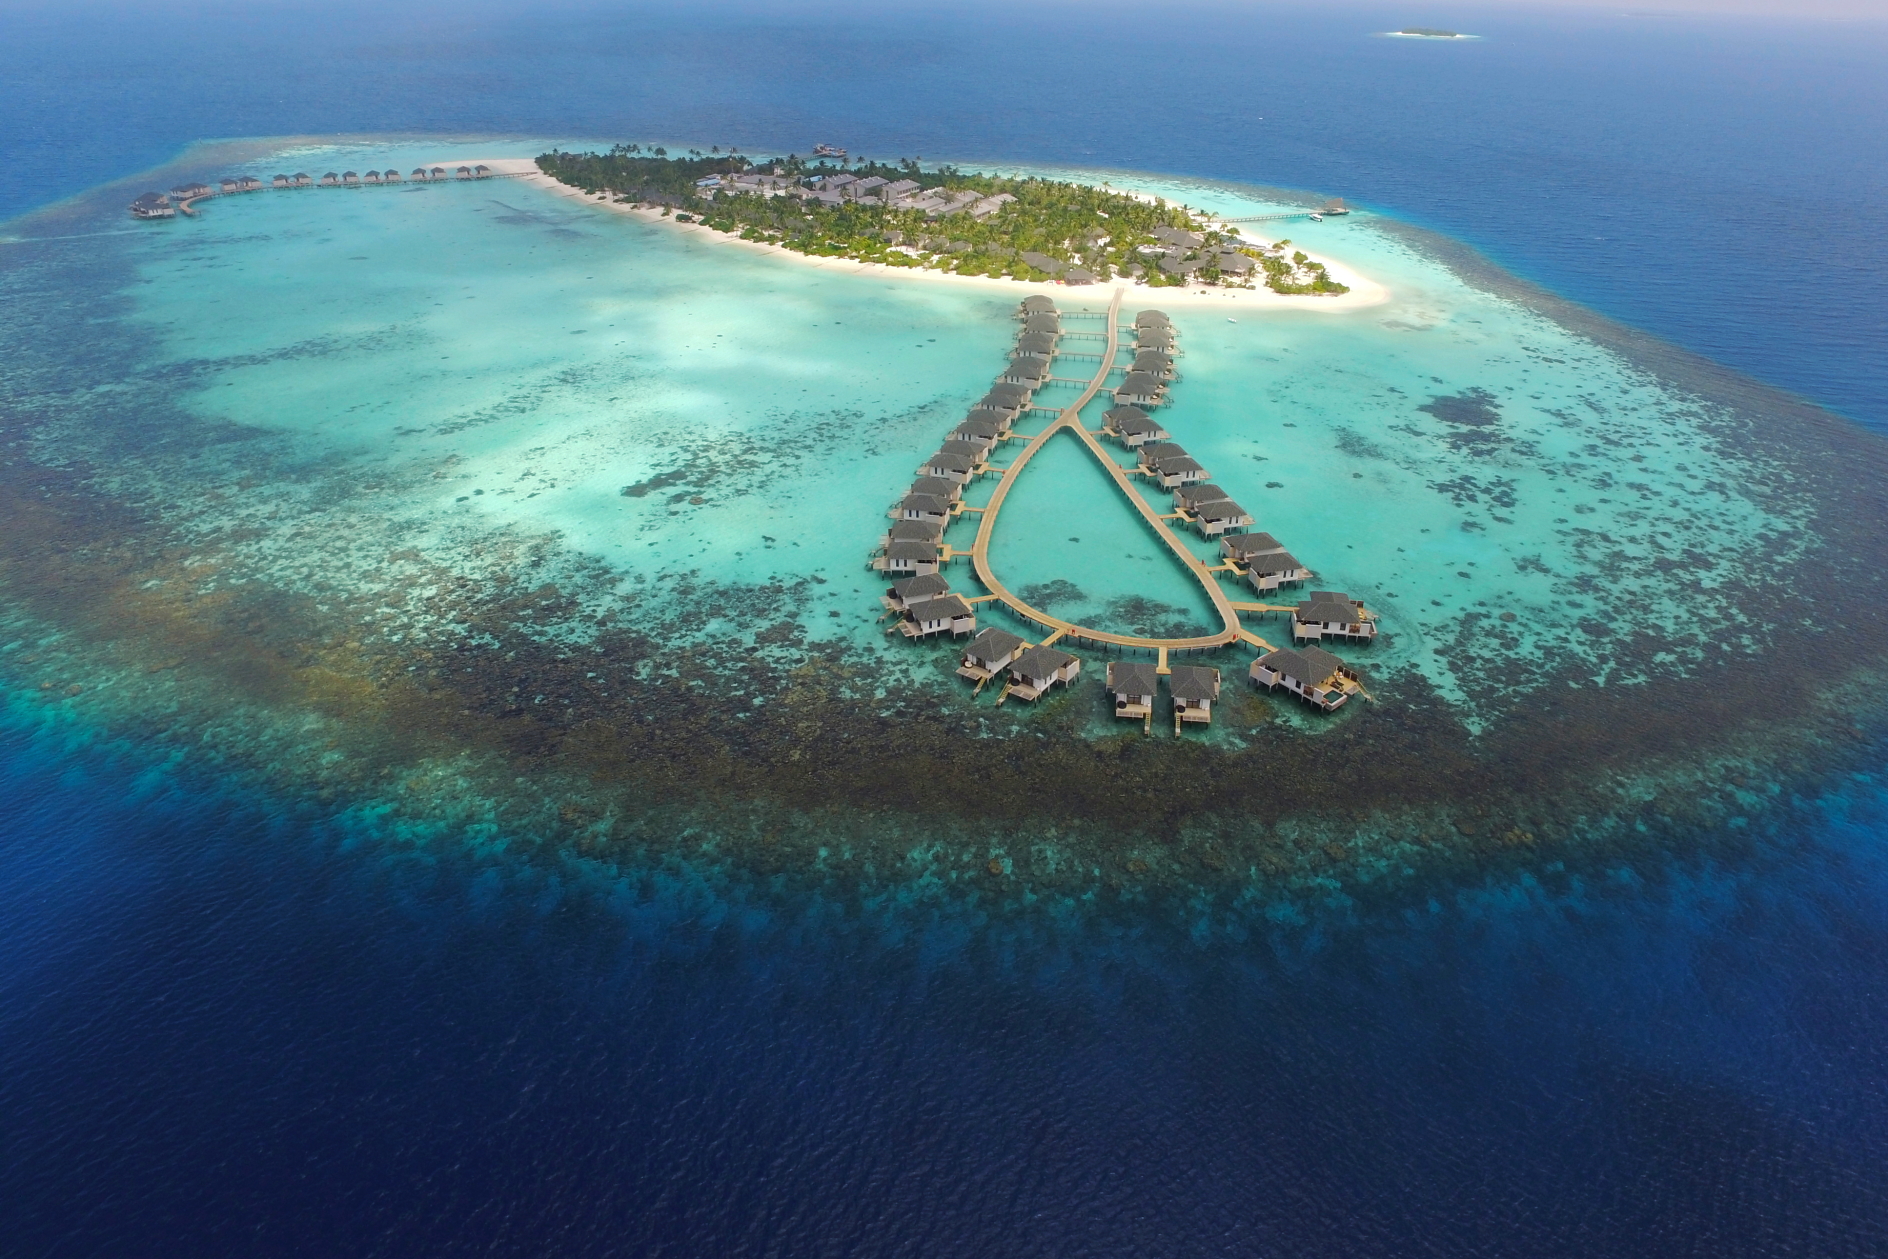 NH Collection Maldives Havodda Resort. Click to enlarge.